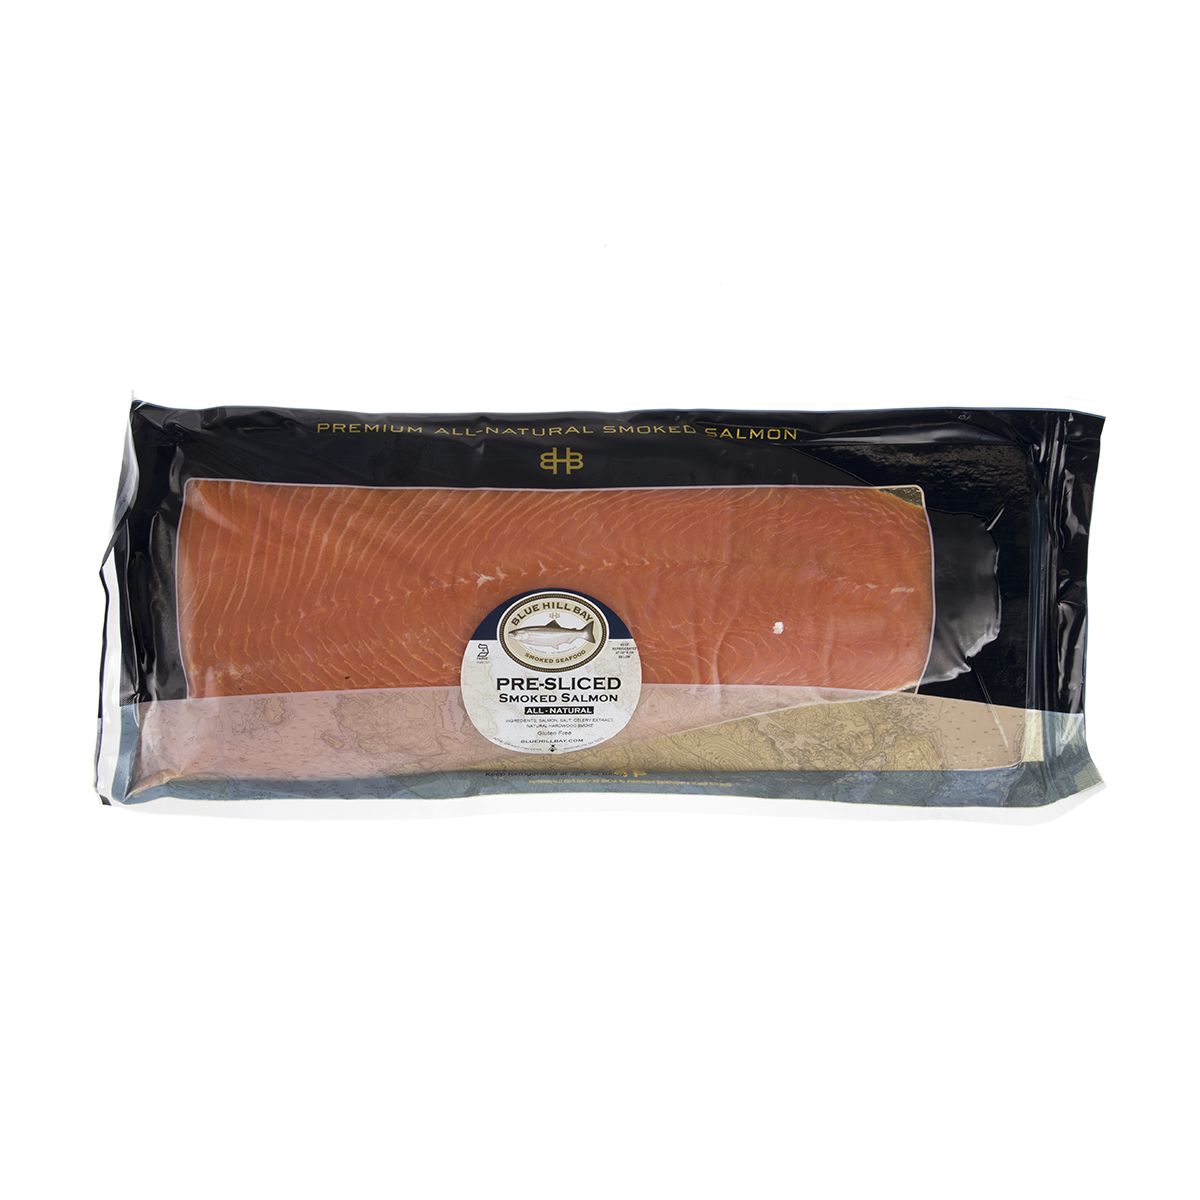 Acme Smoked Fish Pre Sliced Smoked Atlantic Salmon 3 Lb Bag